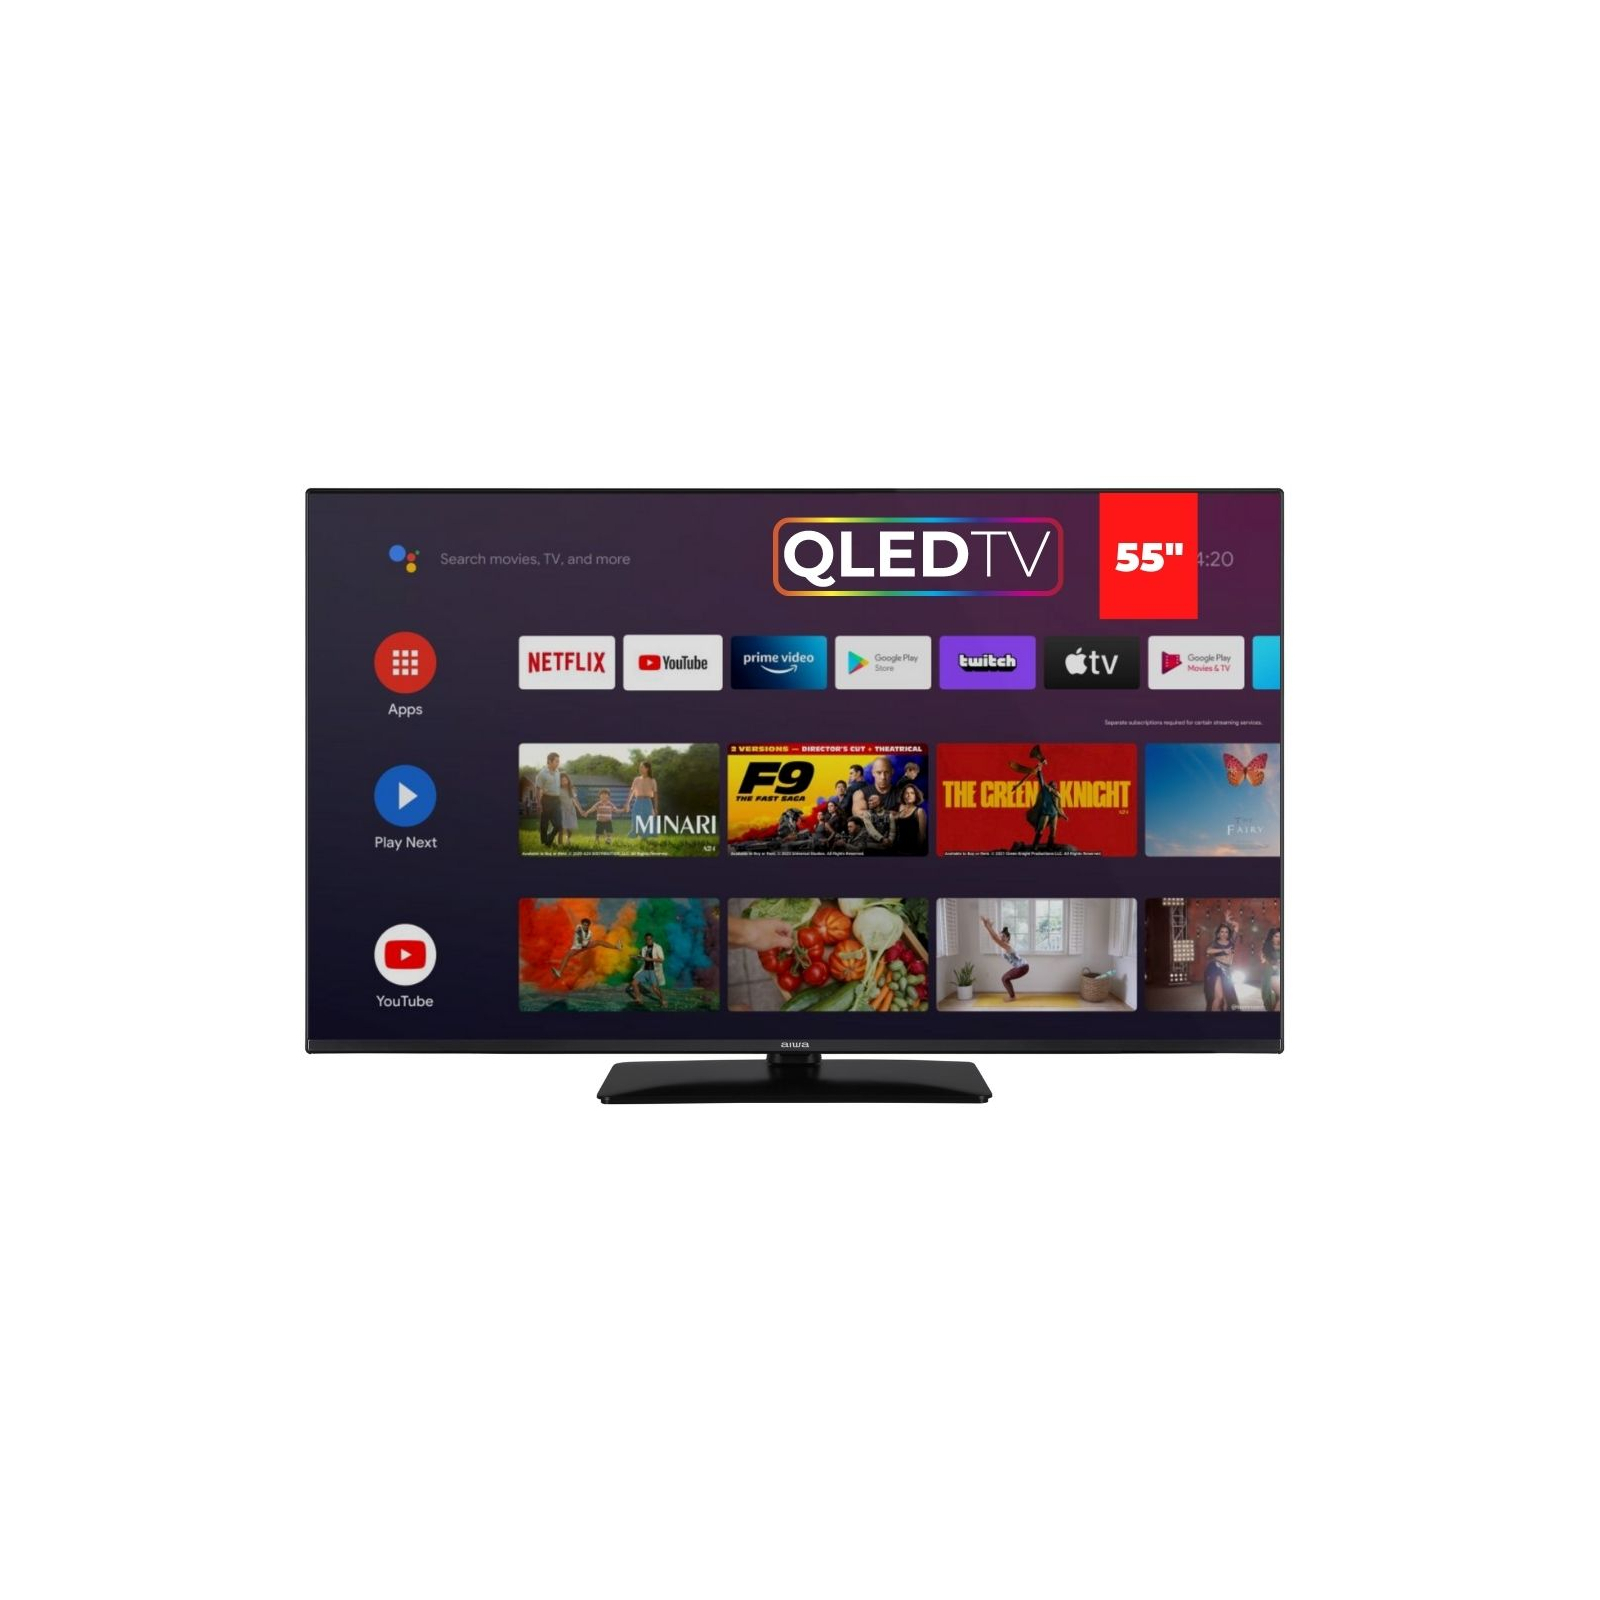 Телевизор AIWA QLED-855UHD-SLIM